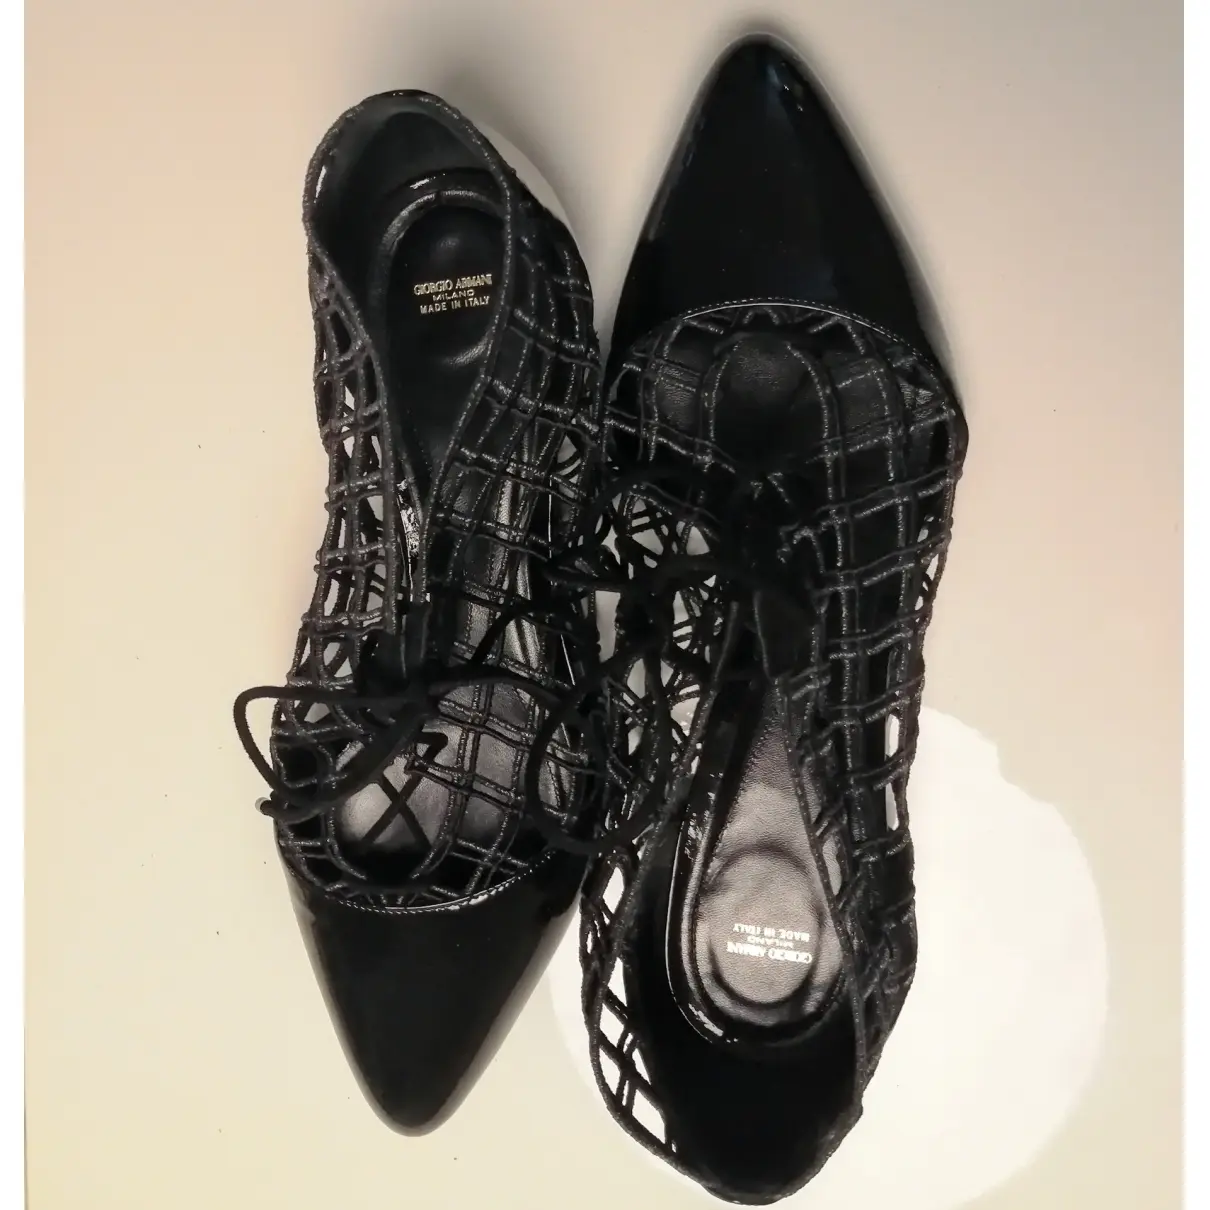 Patent leather lace ups Giorgio Armani